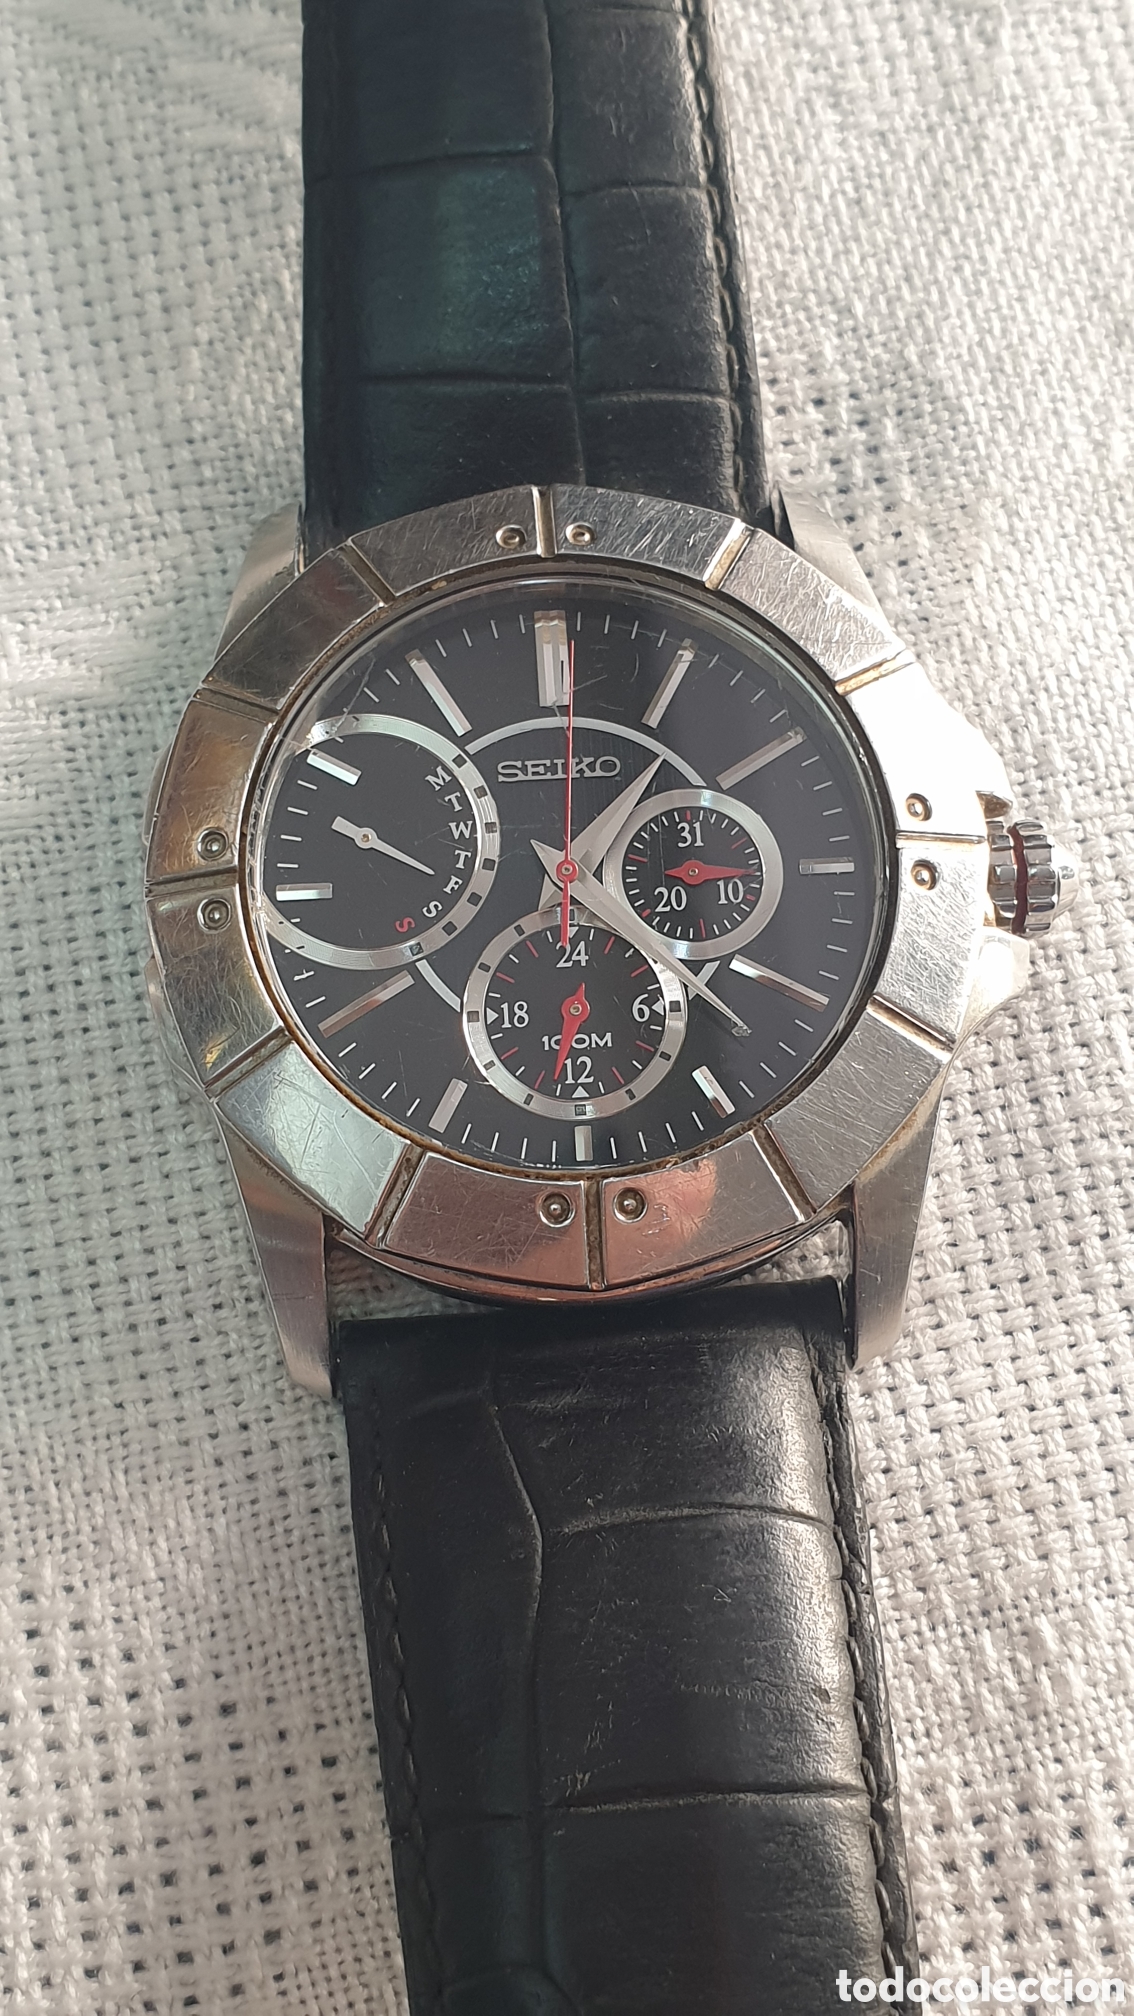 reloj seiko 5y66 - Buy Seiko watches on todocoleccion